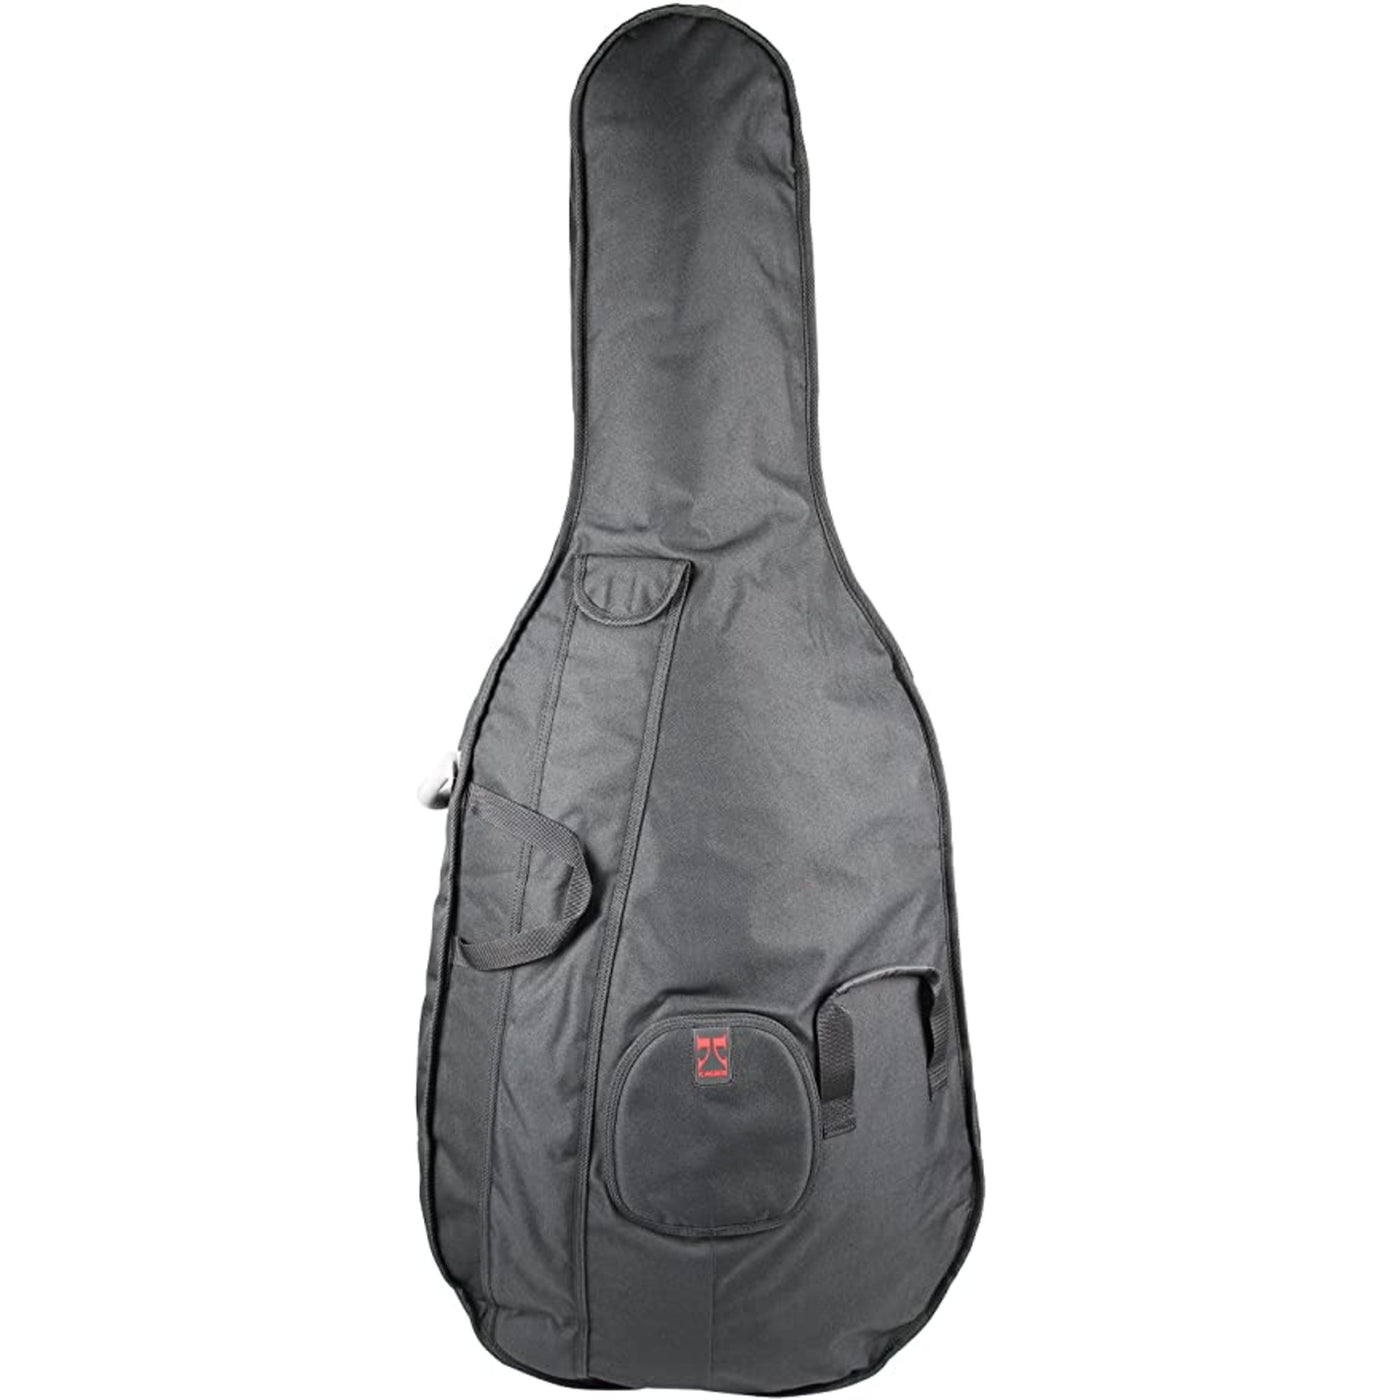 Kaces University Series 3/4 Size Upright Bass Bag